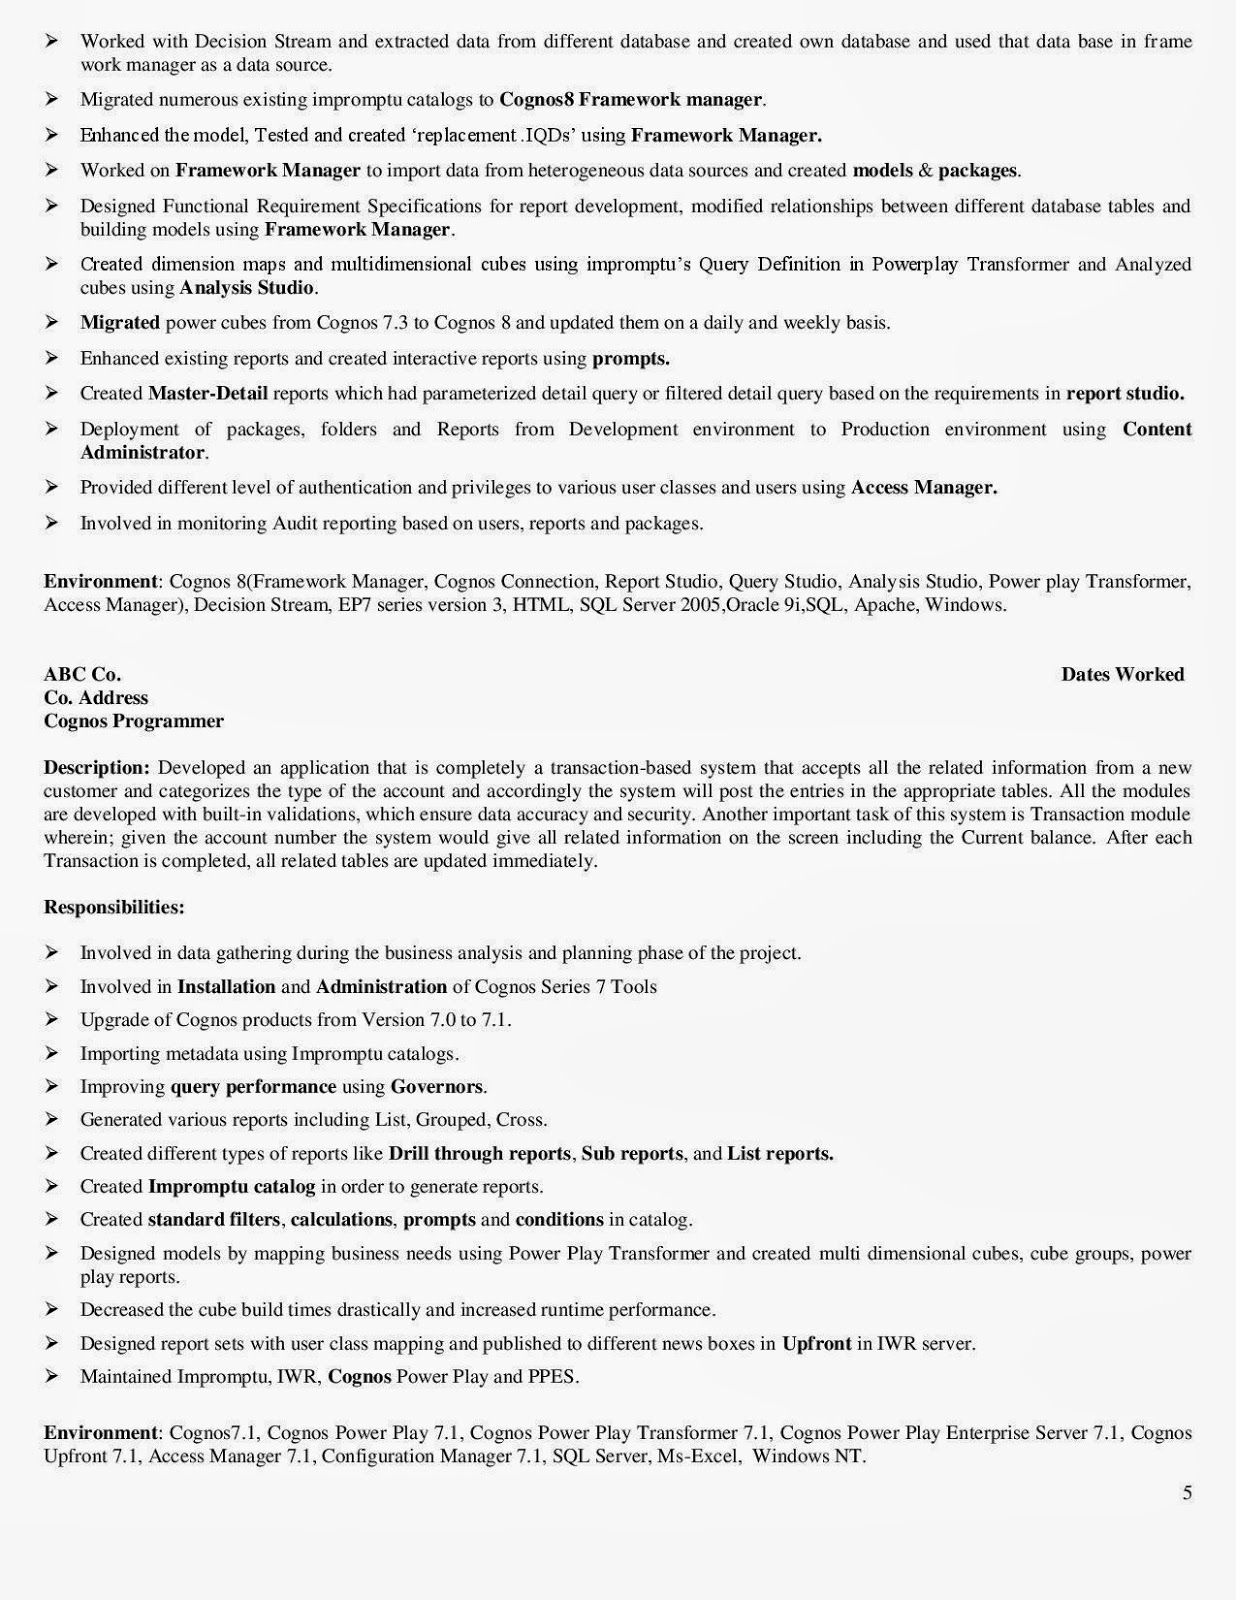 Sample resume for cognos administrator